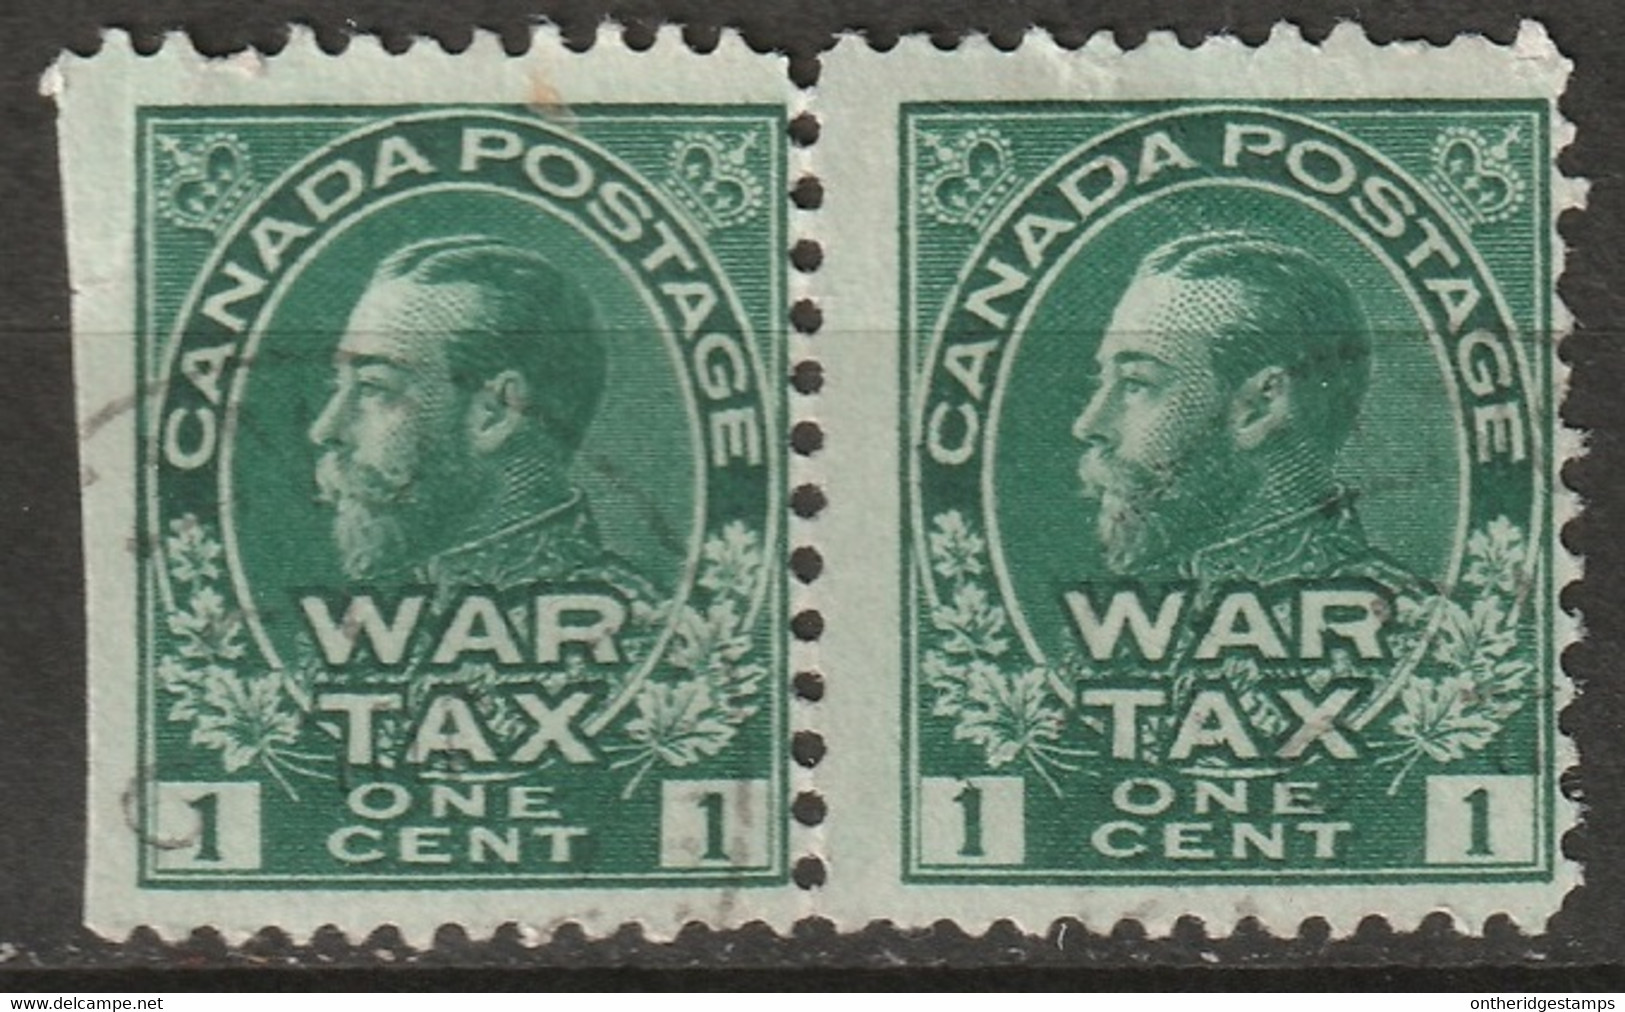 Canada 1915 Sc MR1  War Tax Pair Used - Oorlogsbelastingen